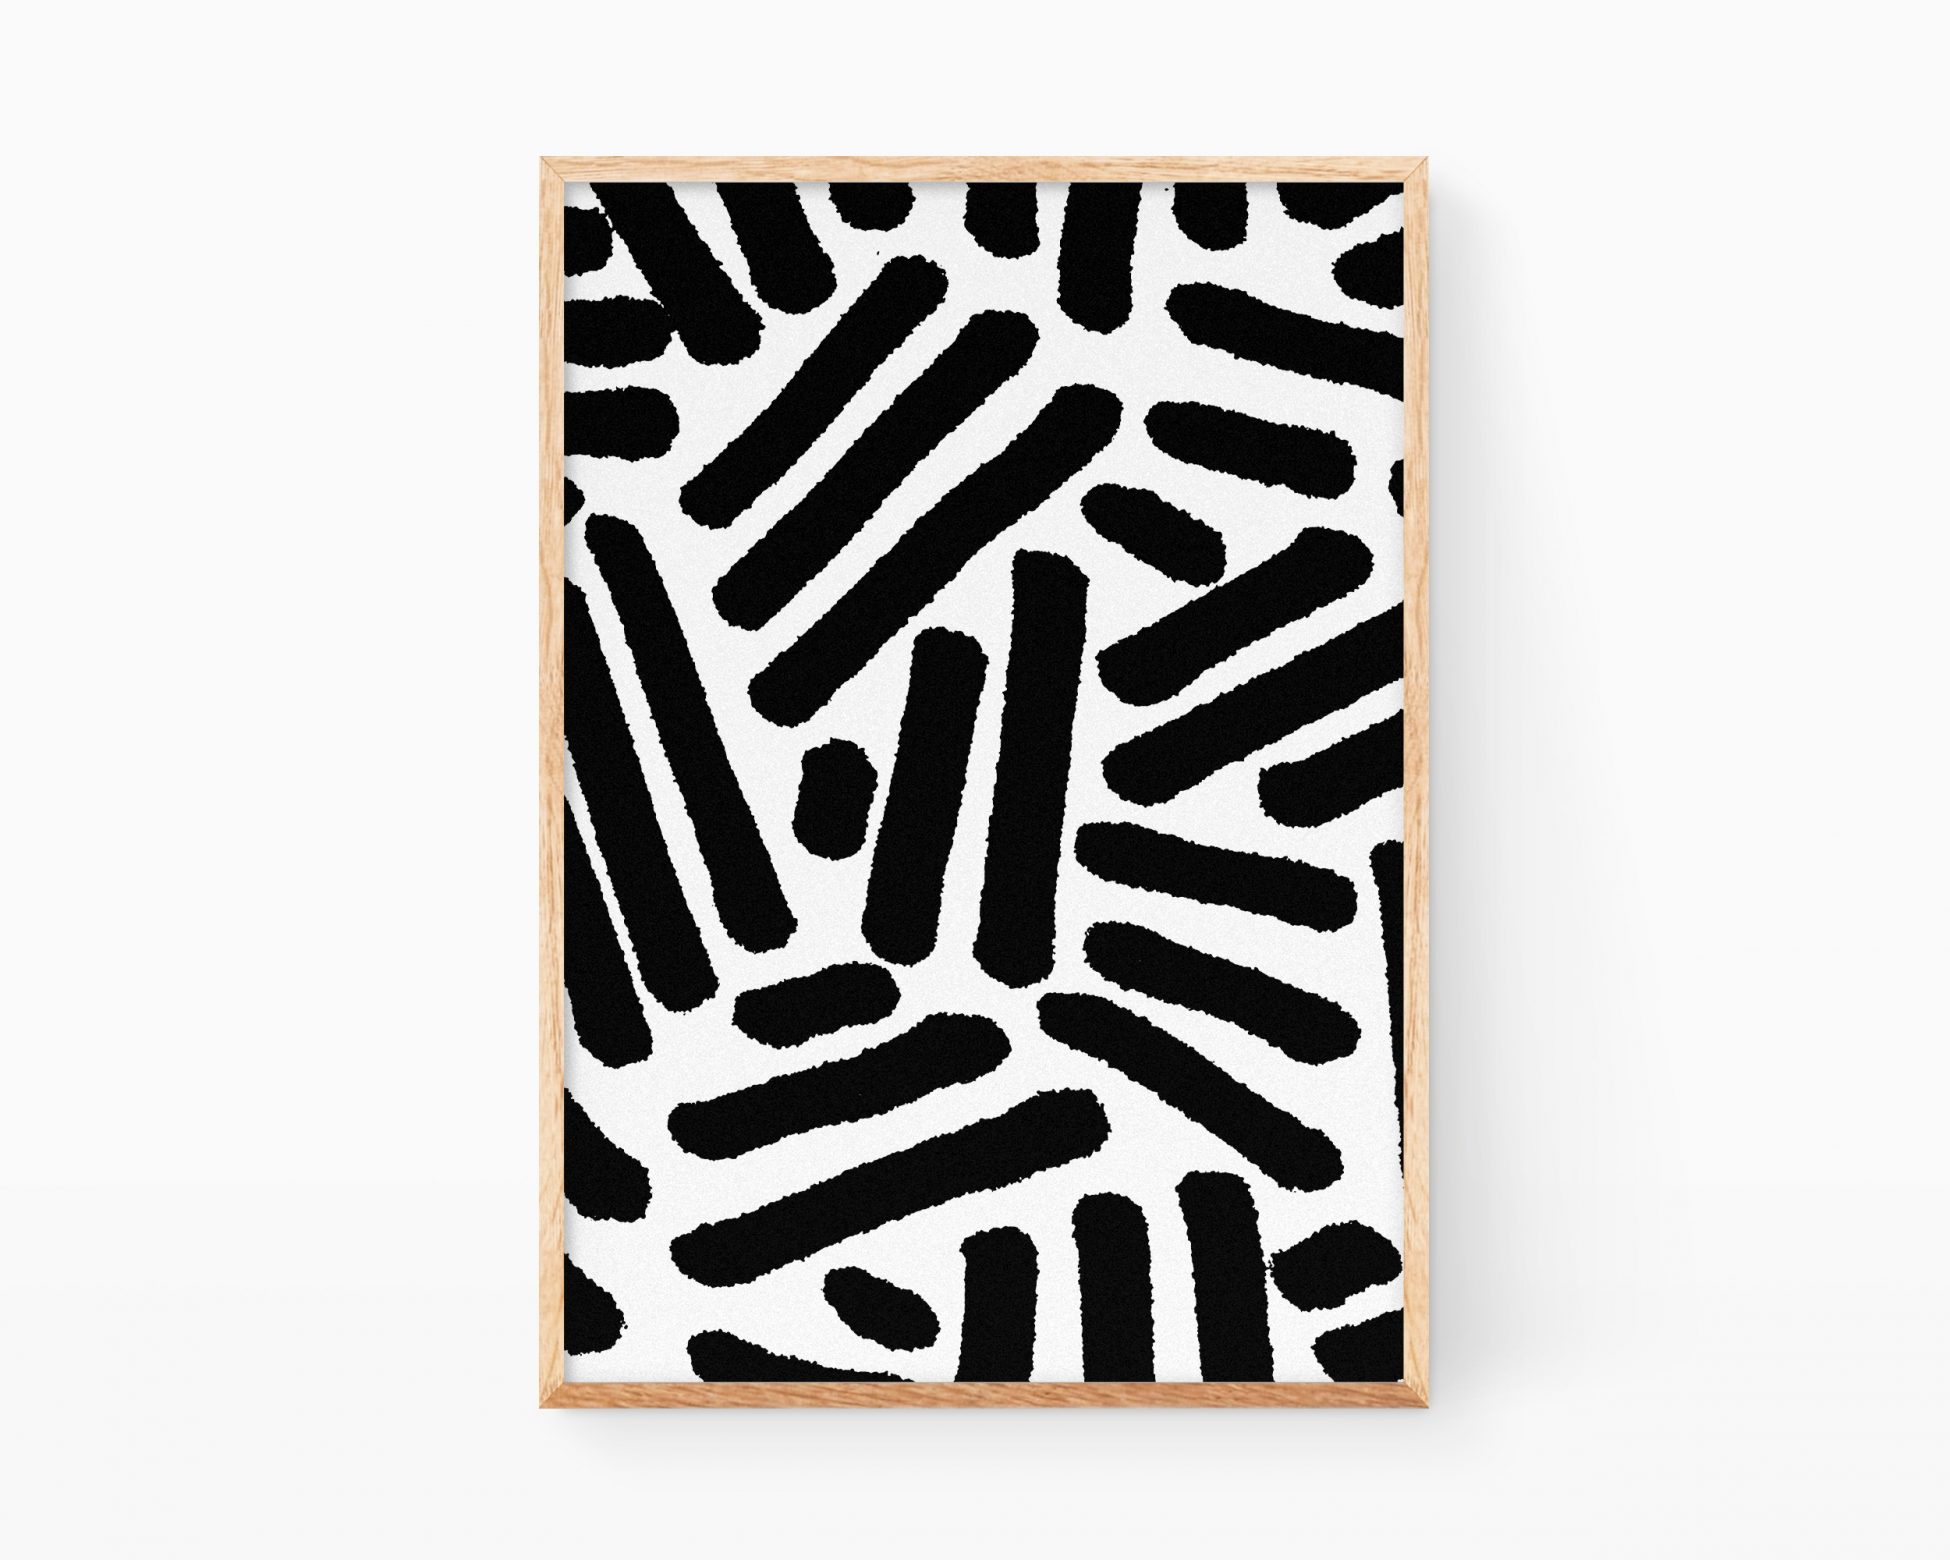 Arte abstracto minimalista. Lámina con una líneas negras sobre fondo blanco de estilo casi zen con dibujos de rayas cortas. Cuadro para enmarcar con decoración abstracta y elegante.